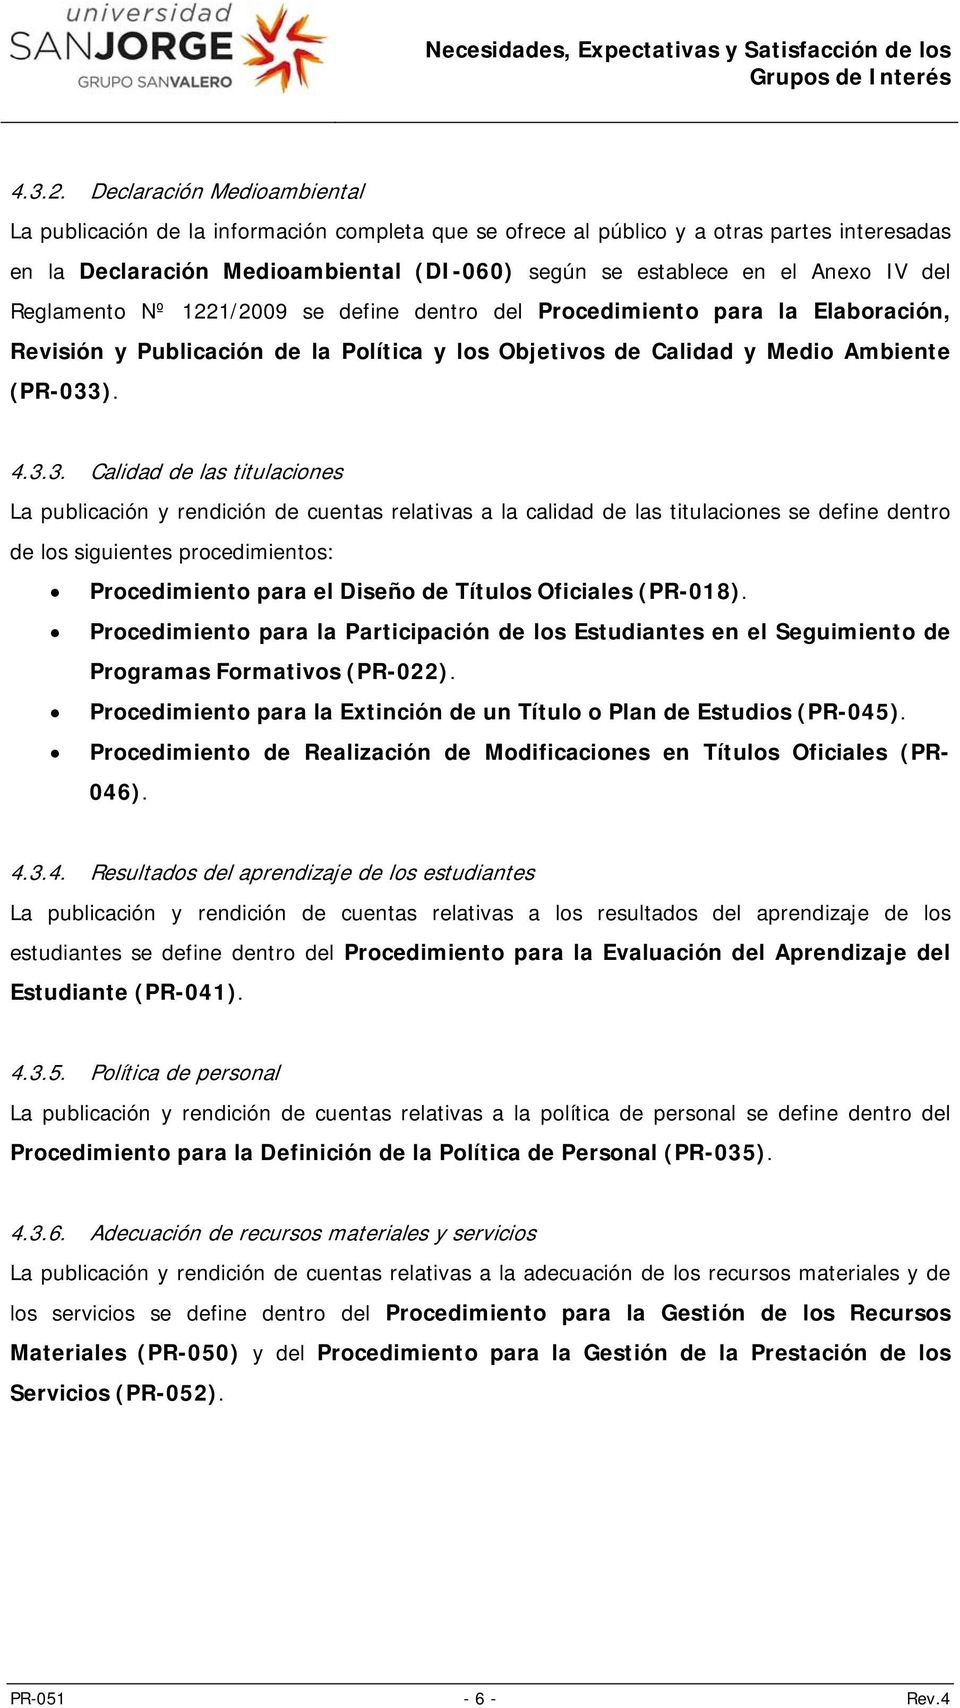 del Reglamento Nº 1221/2009 se define dentro del Procedimiento para la Elaboración, Revisión y Publicación de la Política y los Objetivos de Calidad y Medio Ambiente (PR-033